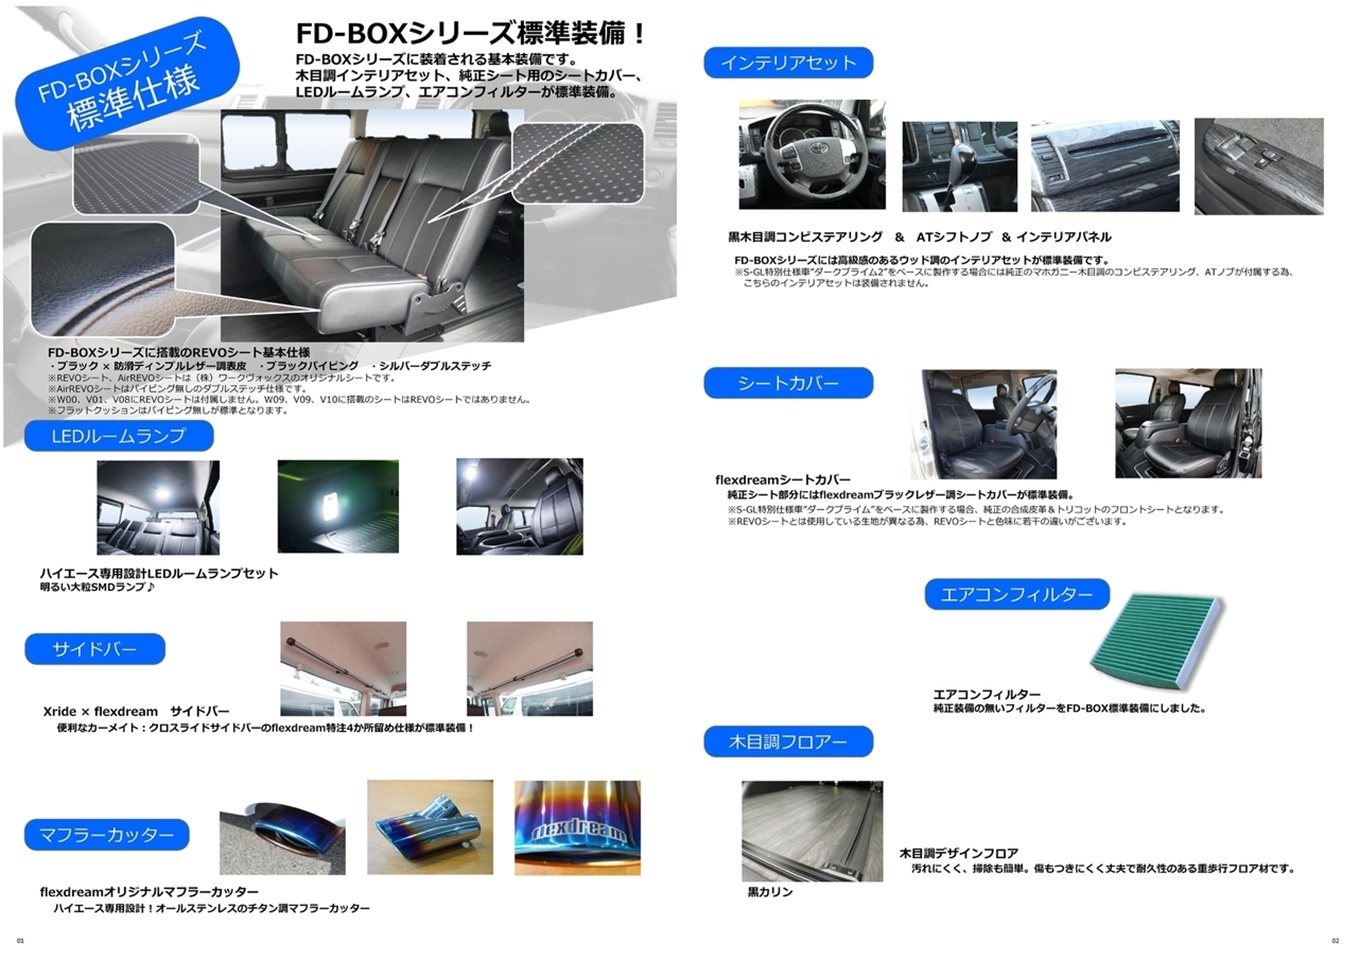 ハイエースワゴン FD-BOXエントリーモデル【FD-BOX W00】